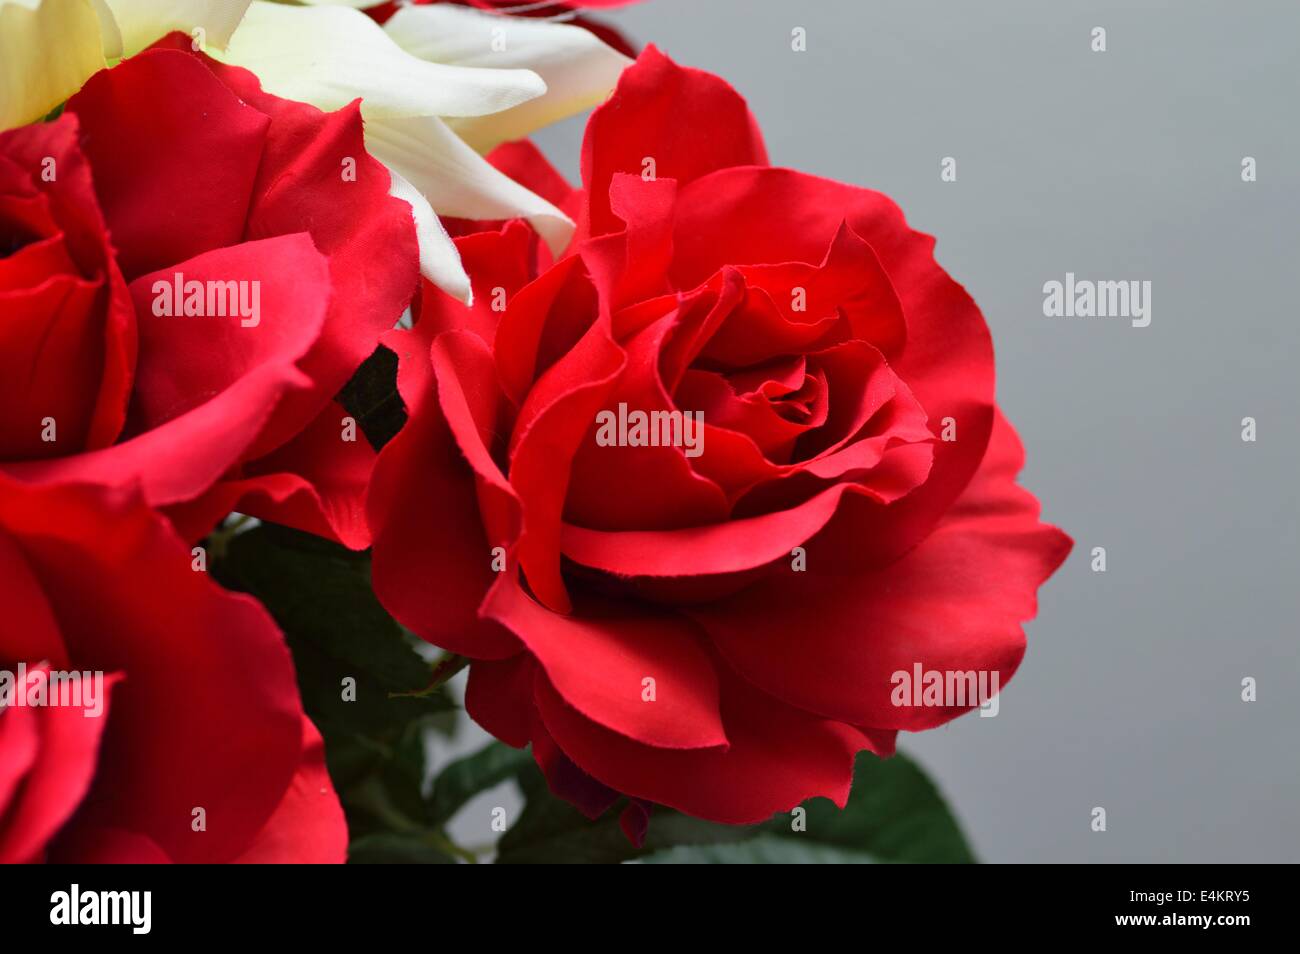 Rose finte immagini e fotografie stock ad alta risoluzione - Alamy